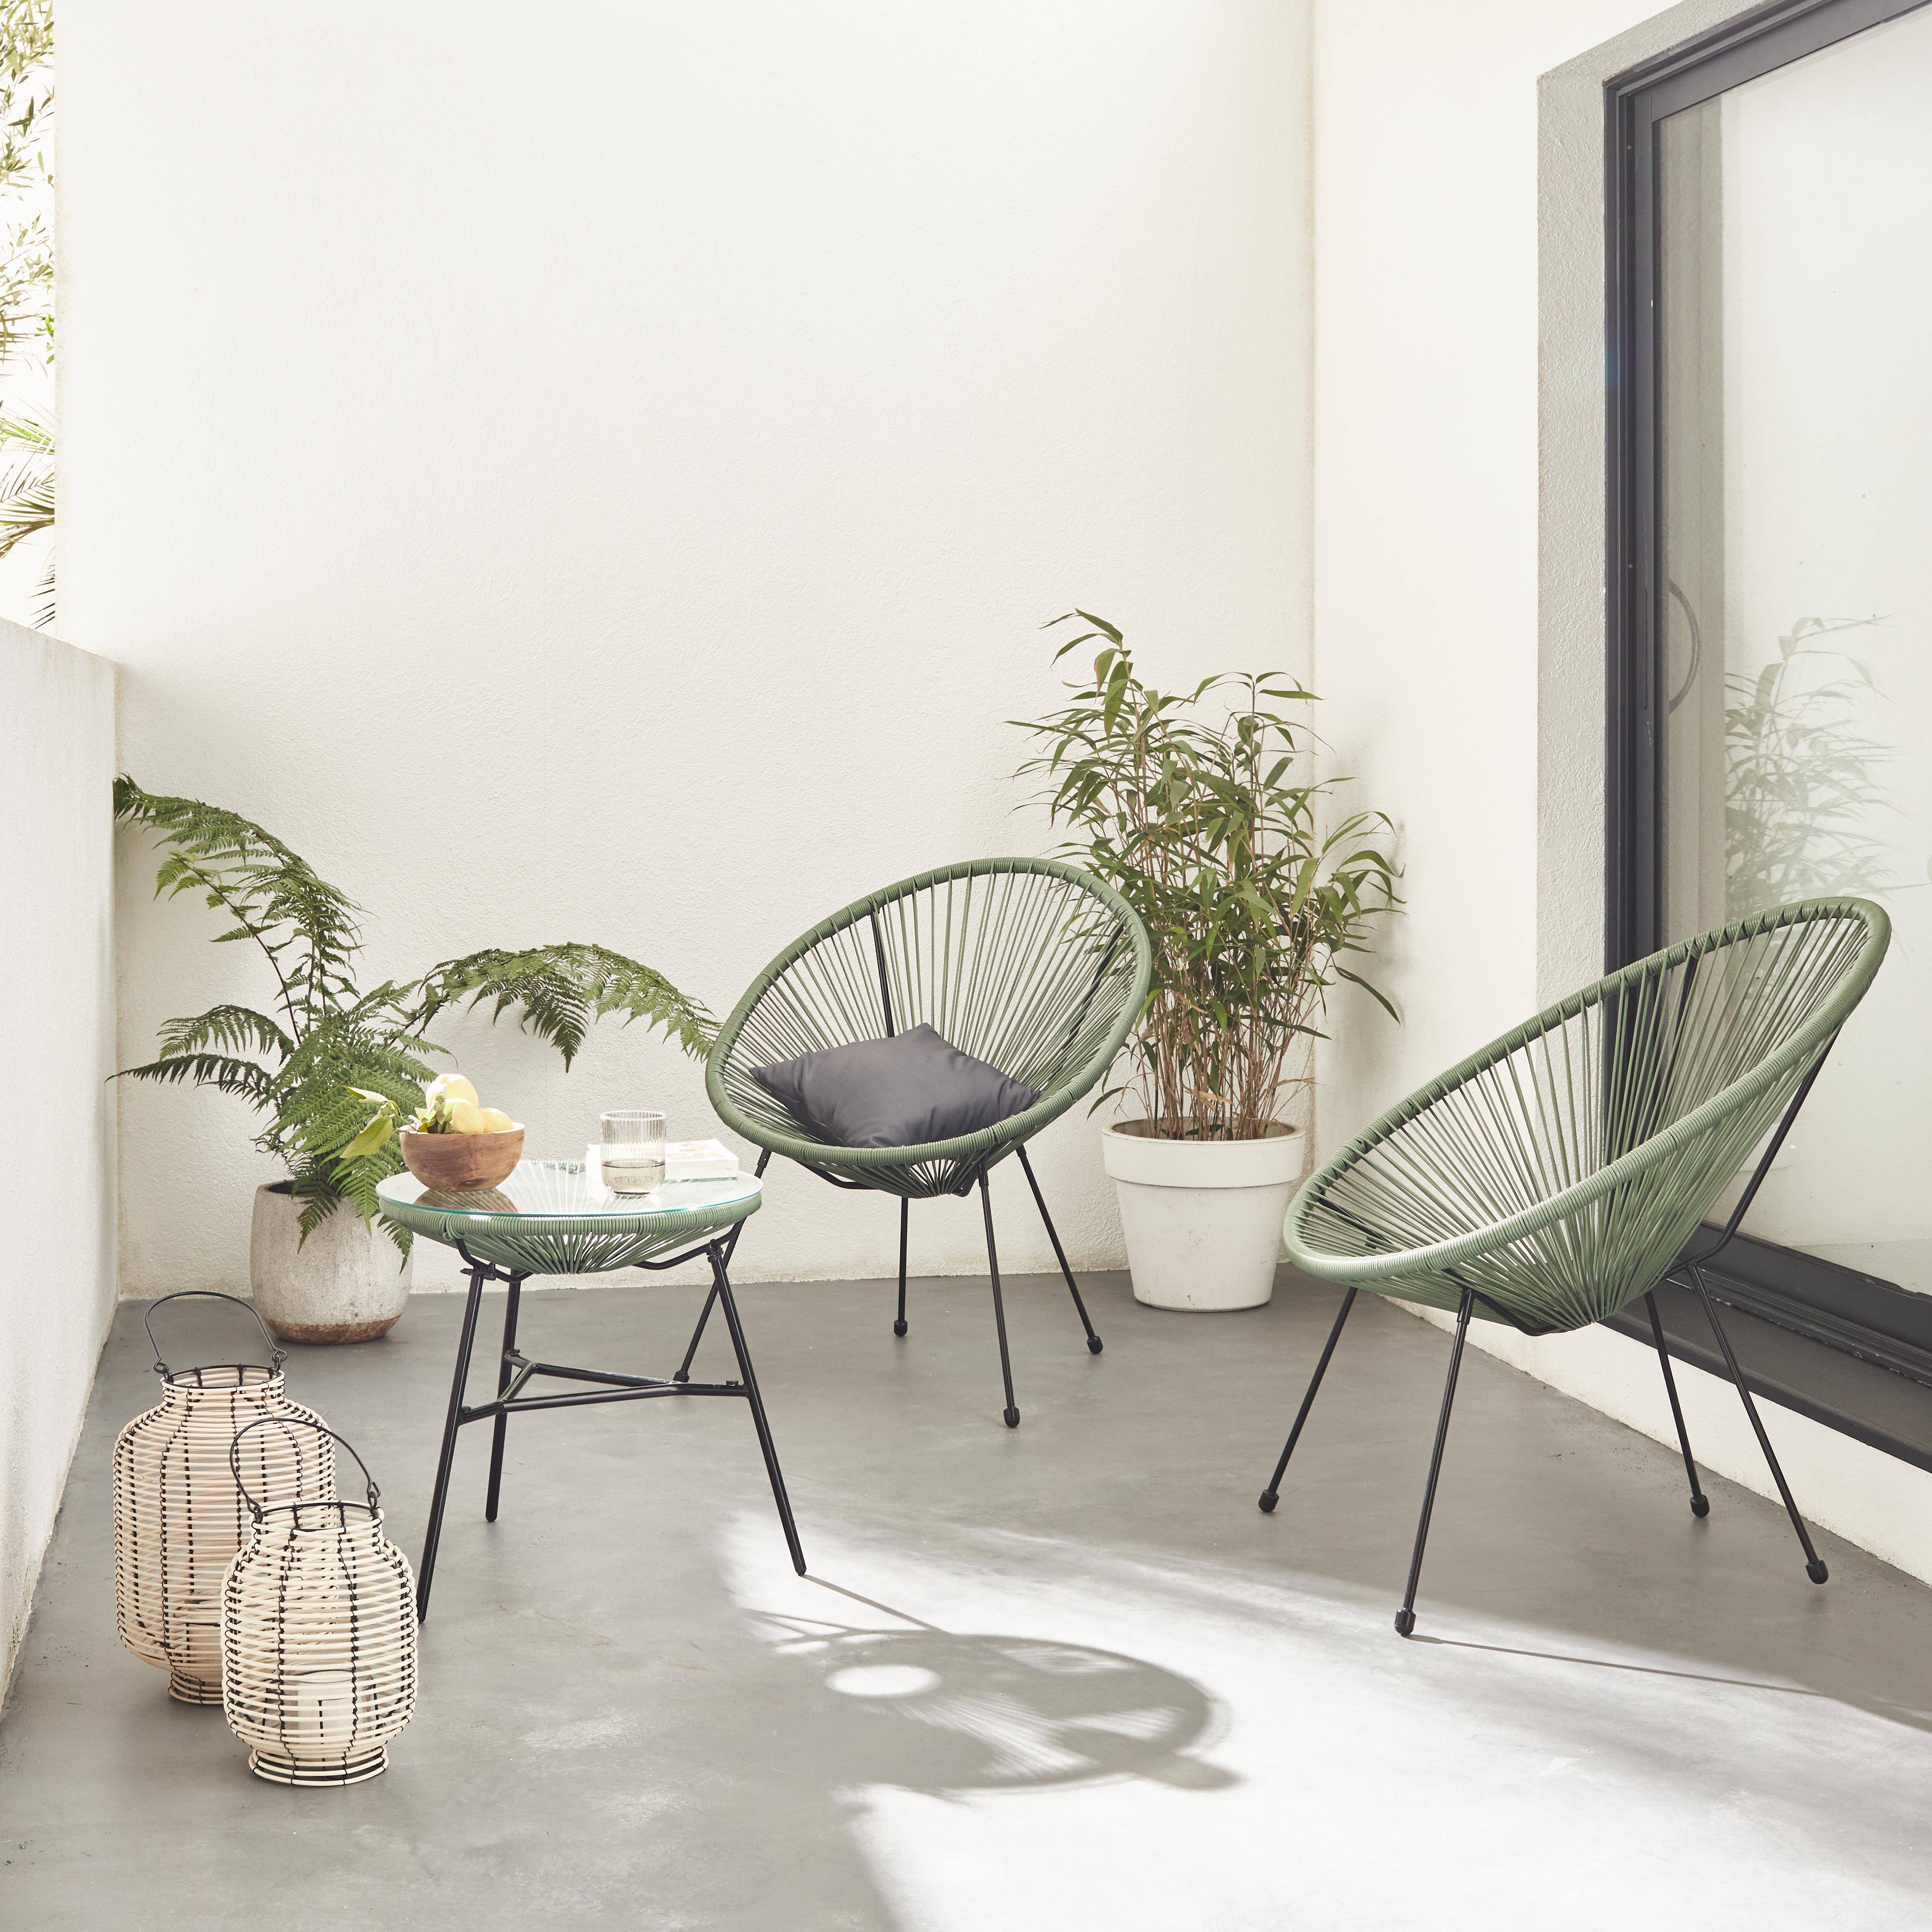 Set mit 2 eiförmigen ACAPULCO-Sesseln mit Beistelltisch - graugrün- 4-beinige Sessel im Retro-Design mit Couchtisch, Kunststoffschnur Photo1